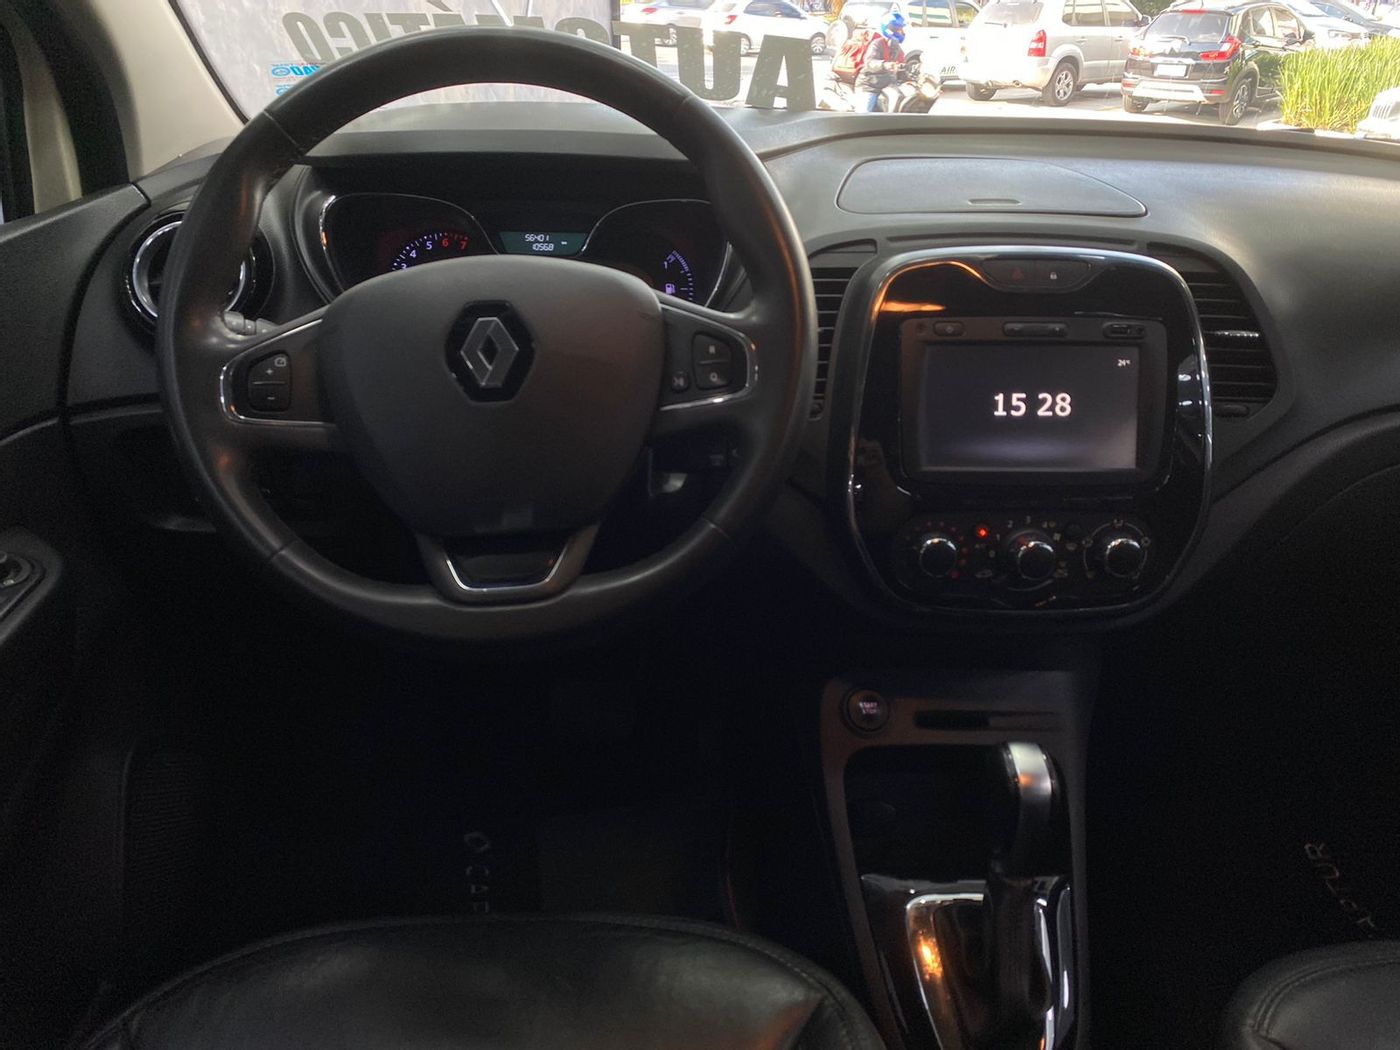 Renault CAPTUR Zen 1.6 16V Flex 5p Aut.